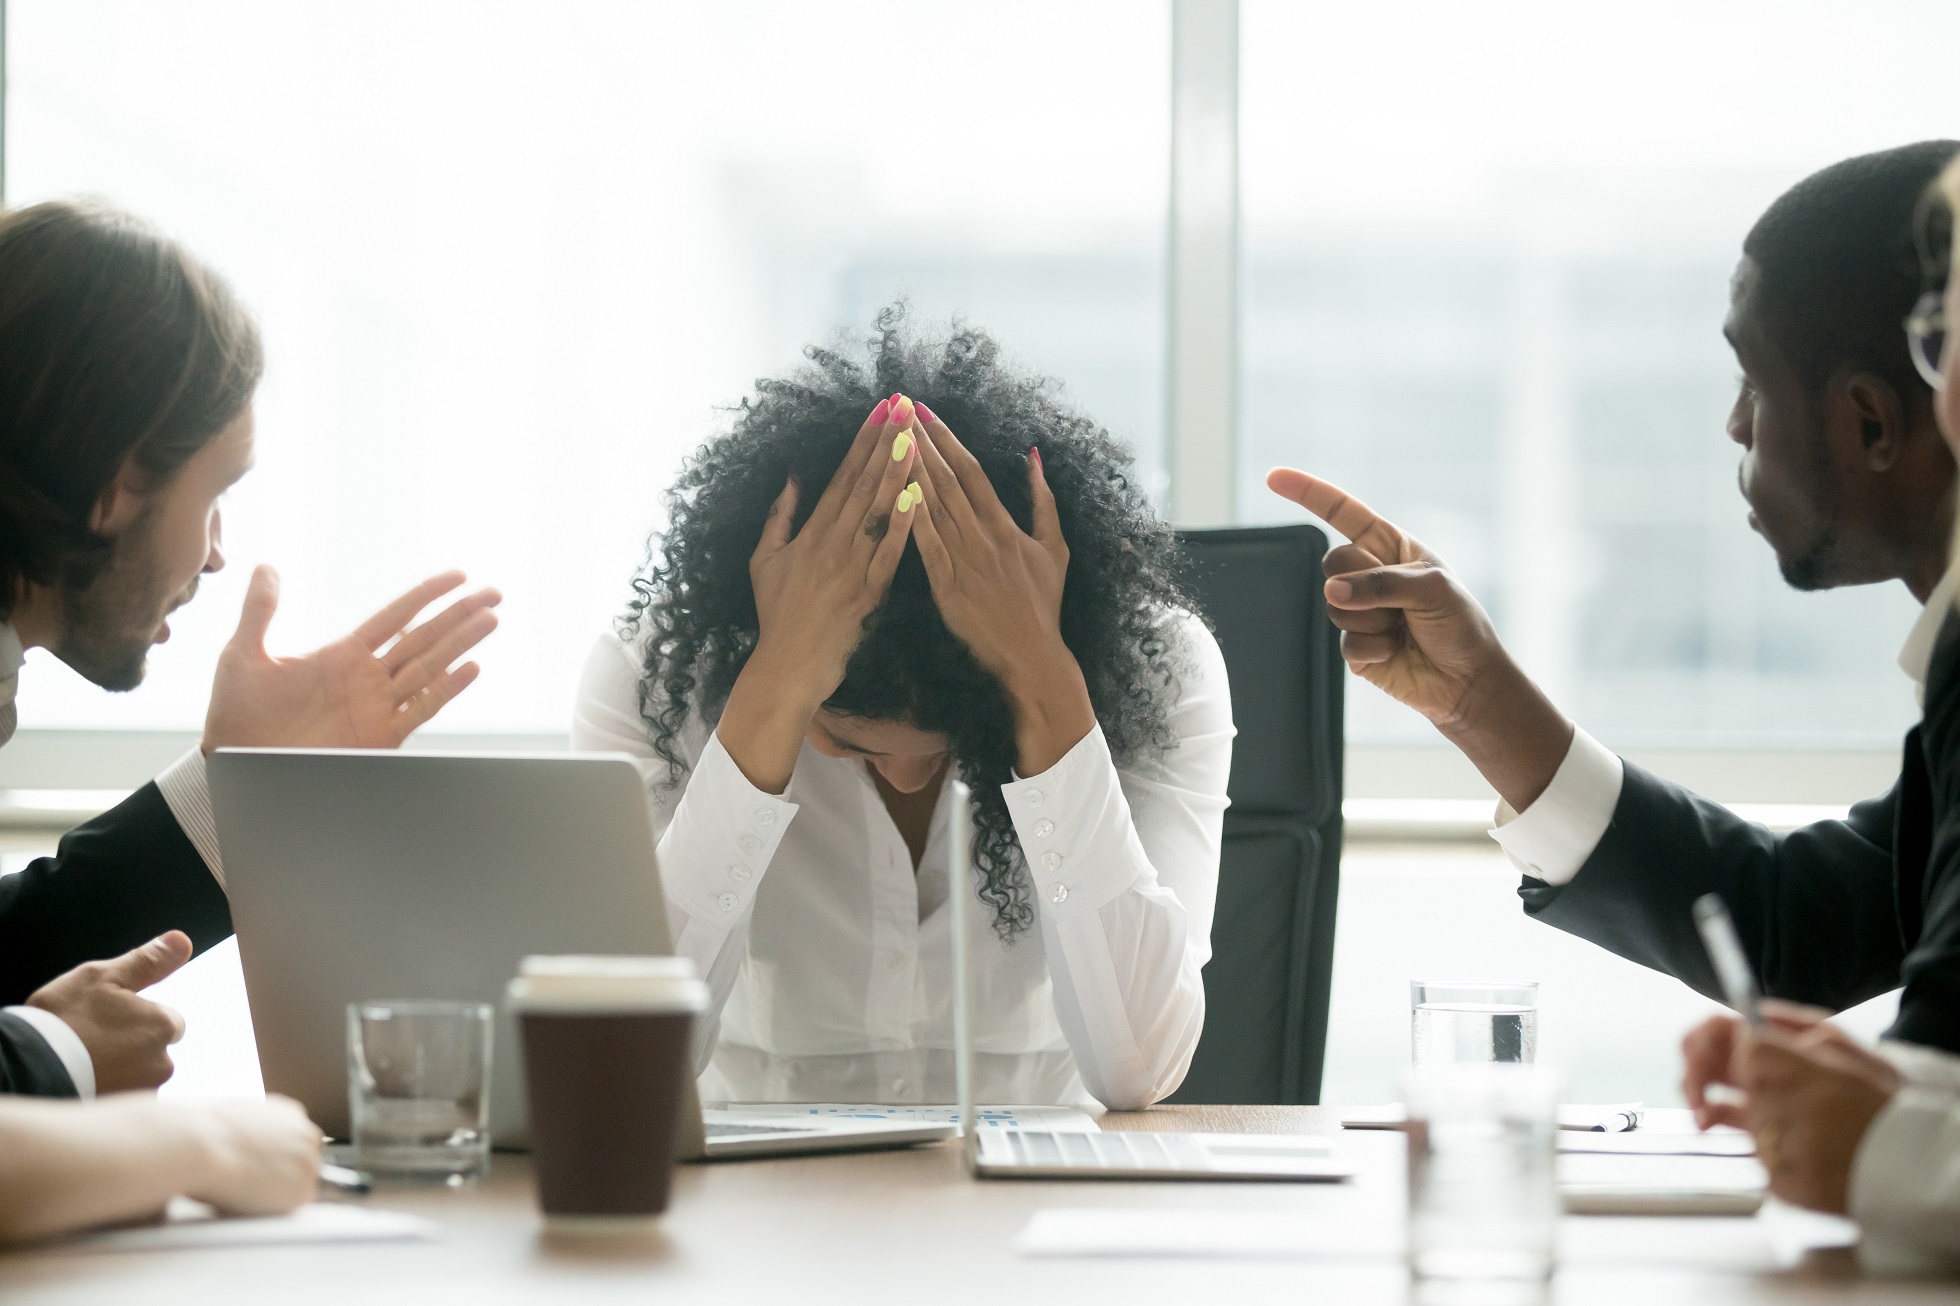 Mulheres sofrem mais que homens com assédio no ambiente de trabalho